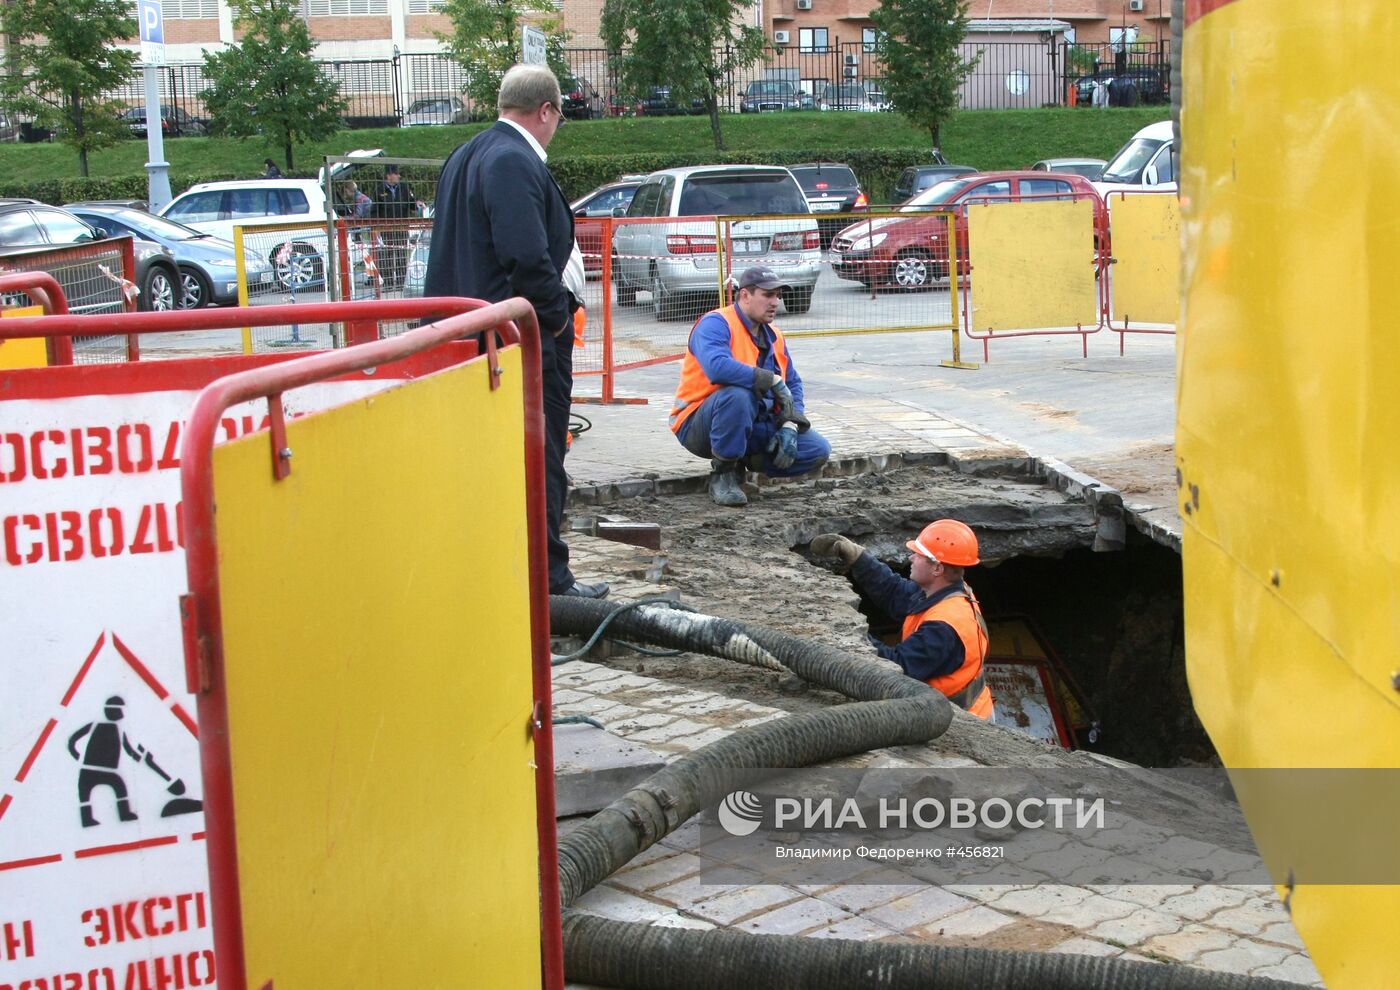 Провал грунта произошел на западе Москвы